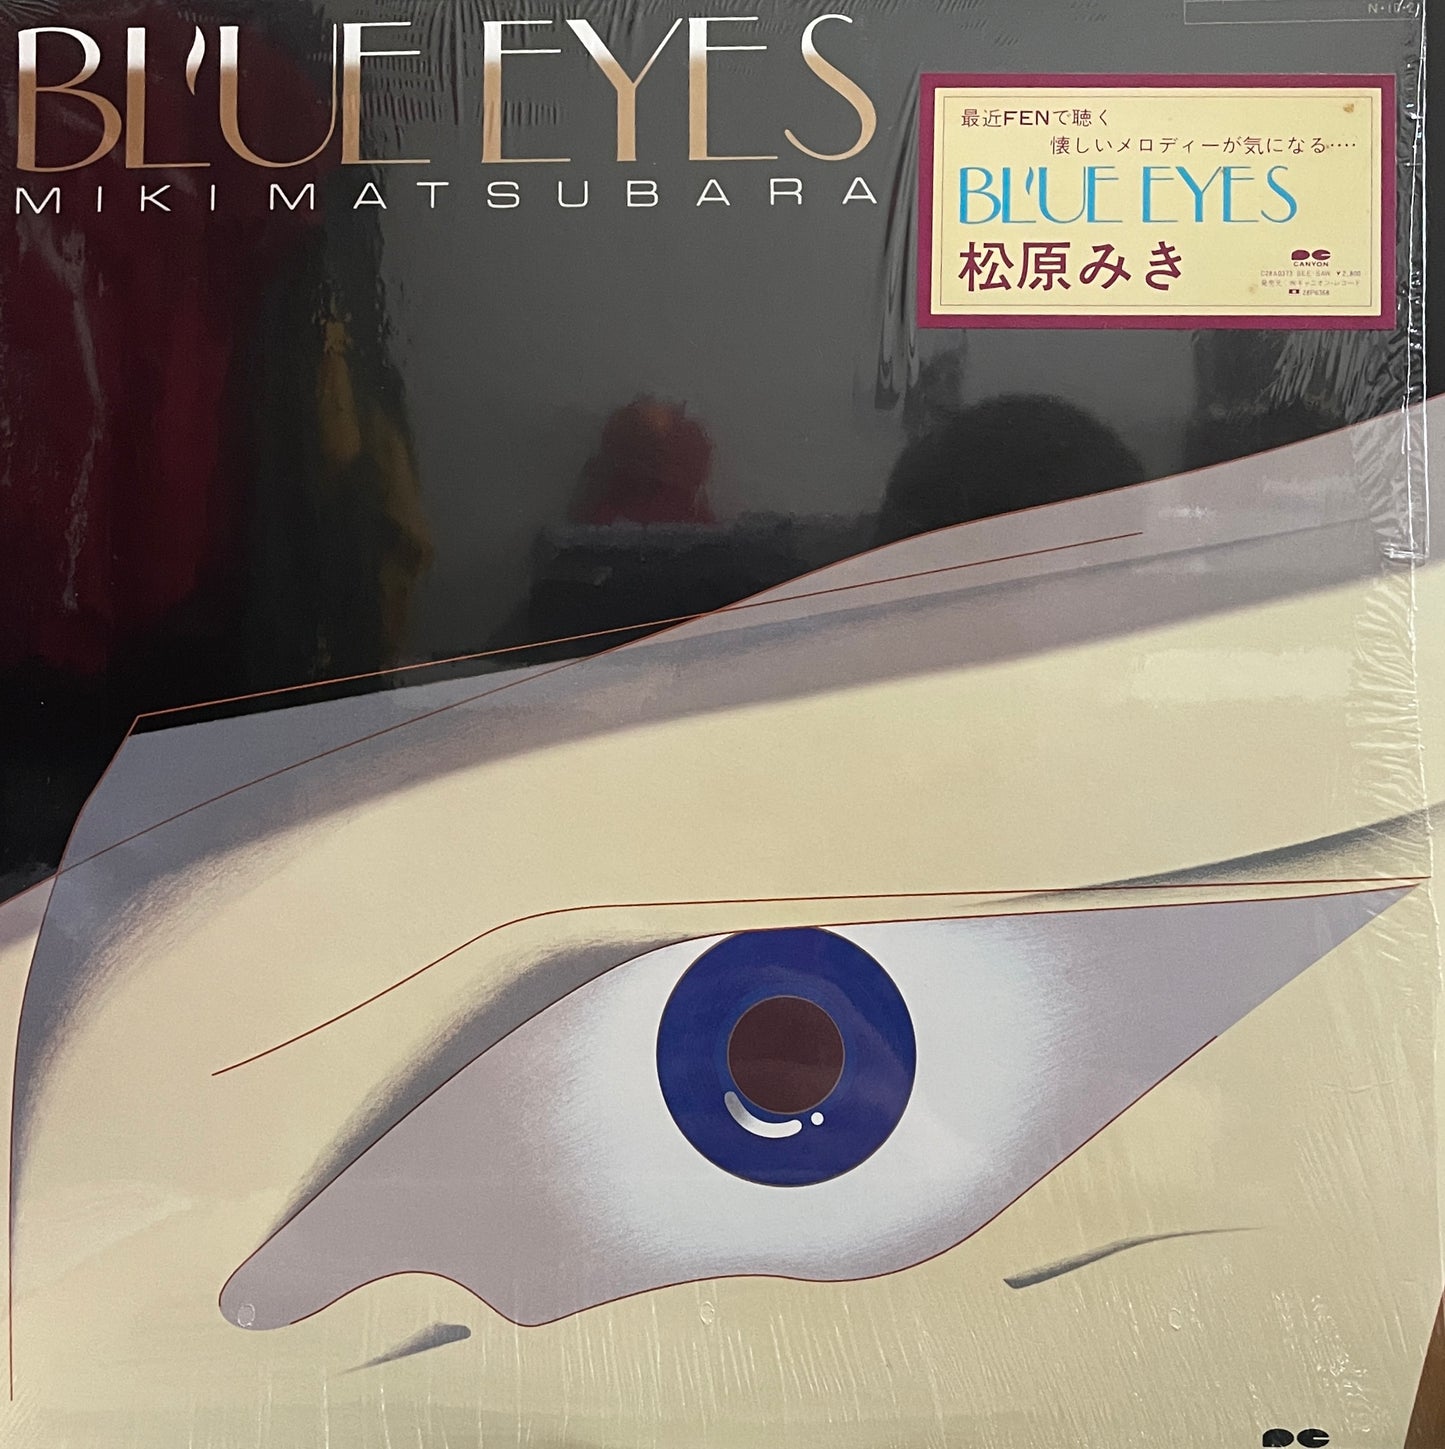 Miki Matsubara "Blue Eyes" (1984)